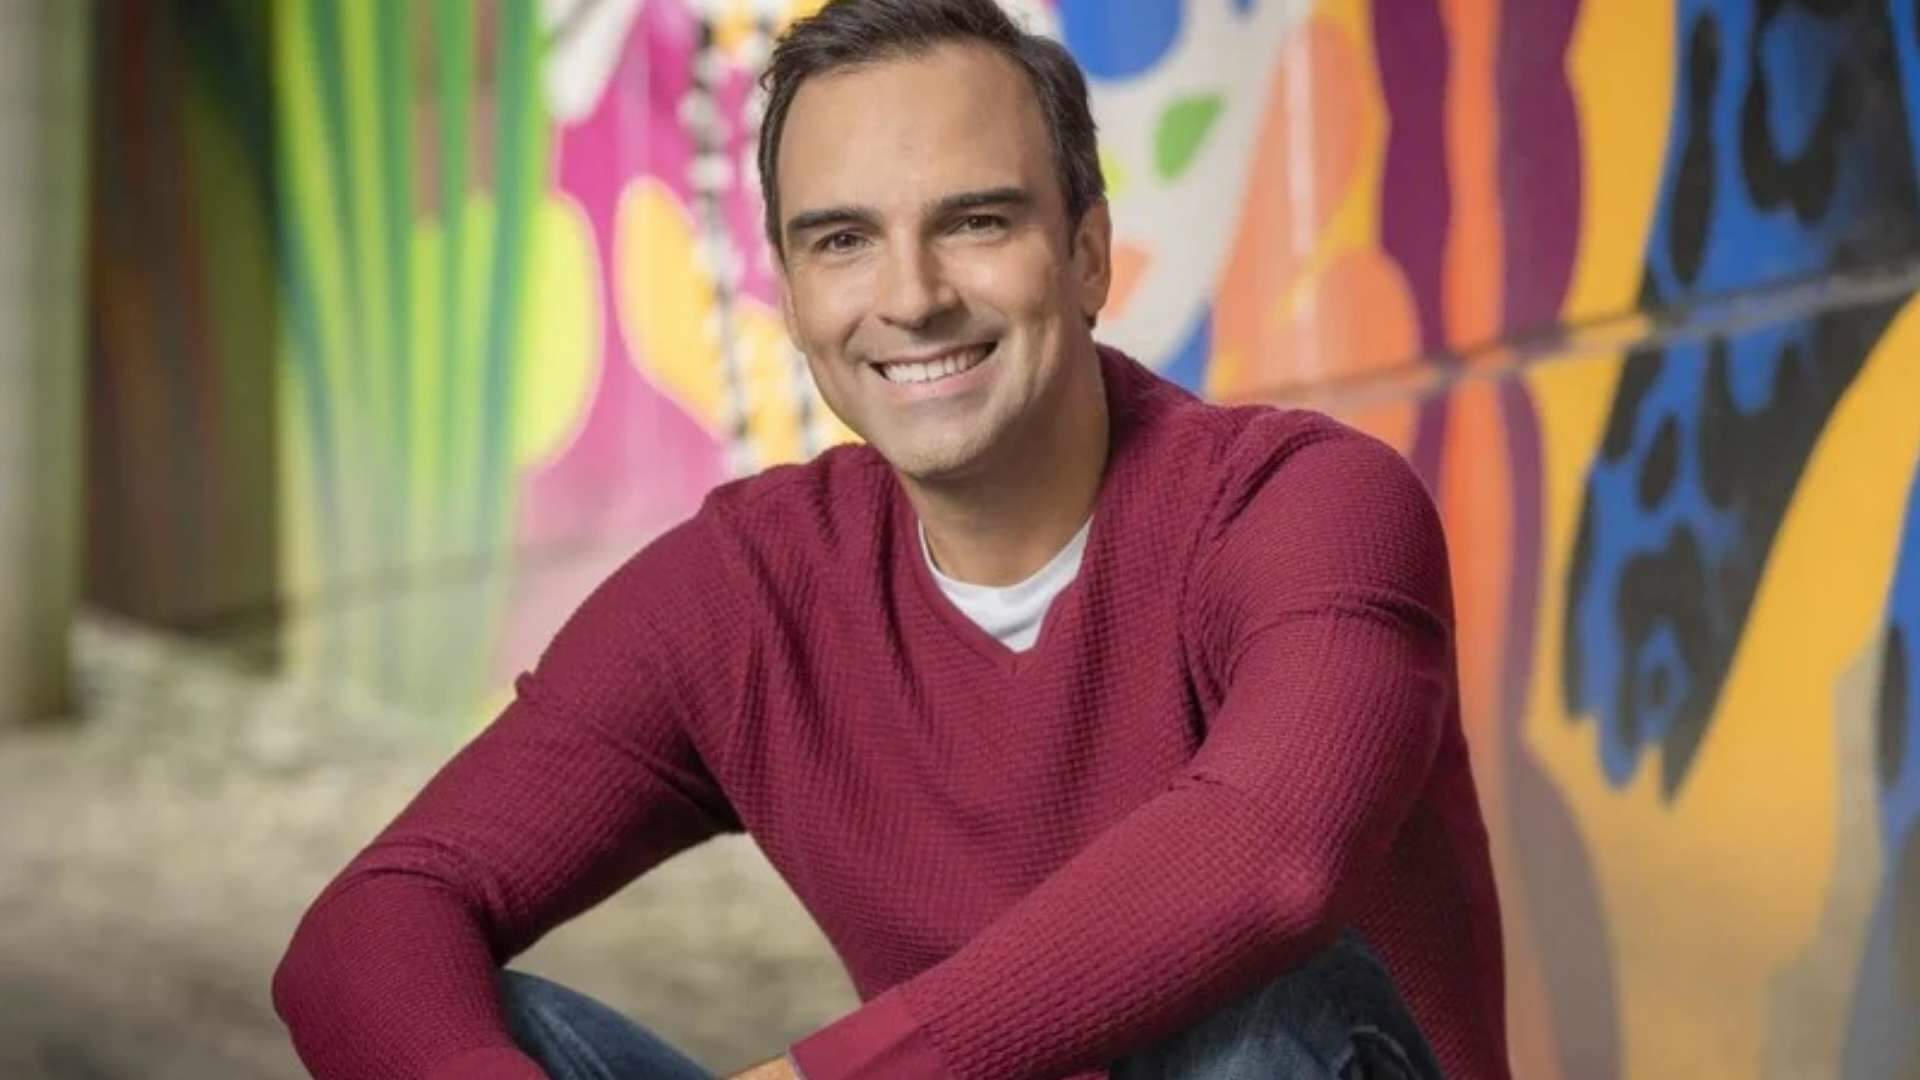 Tadeu Schmidt é convidado a apresentar outro reality e web explode: “Vai deixar o BBB?” - Metropolitana FM